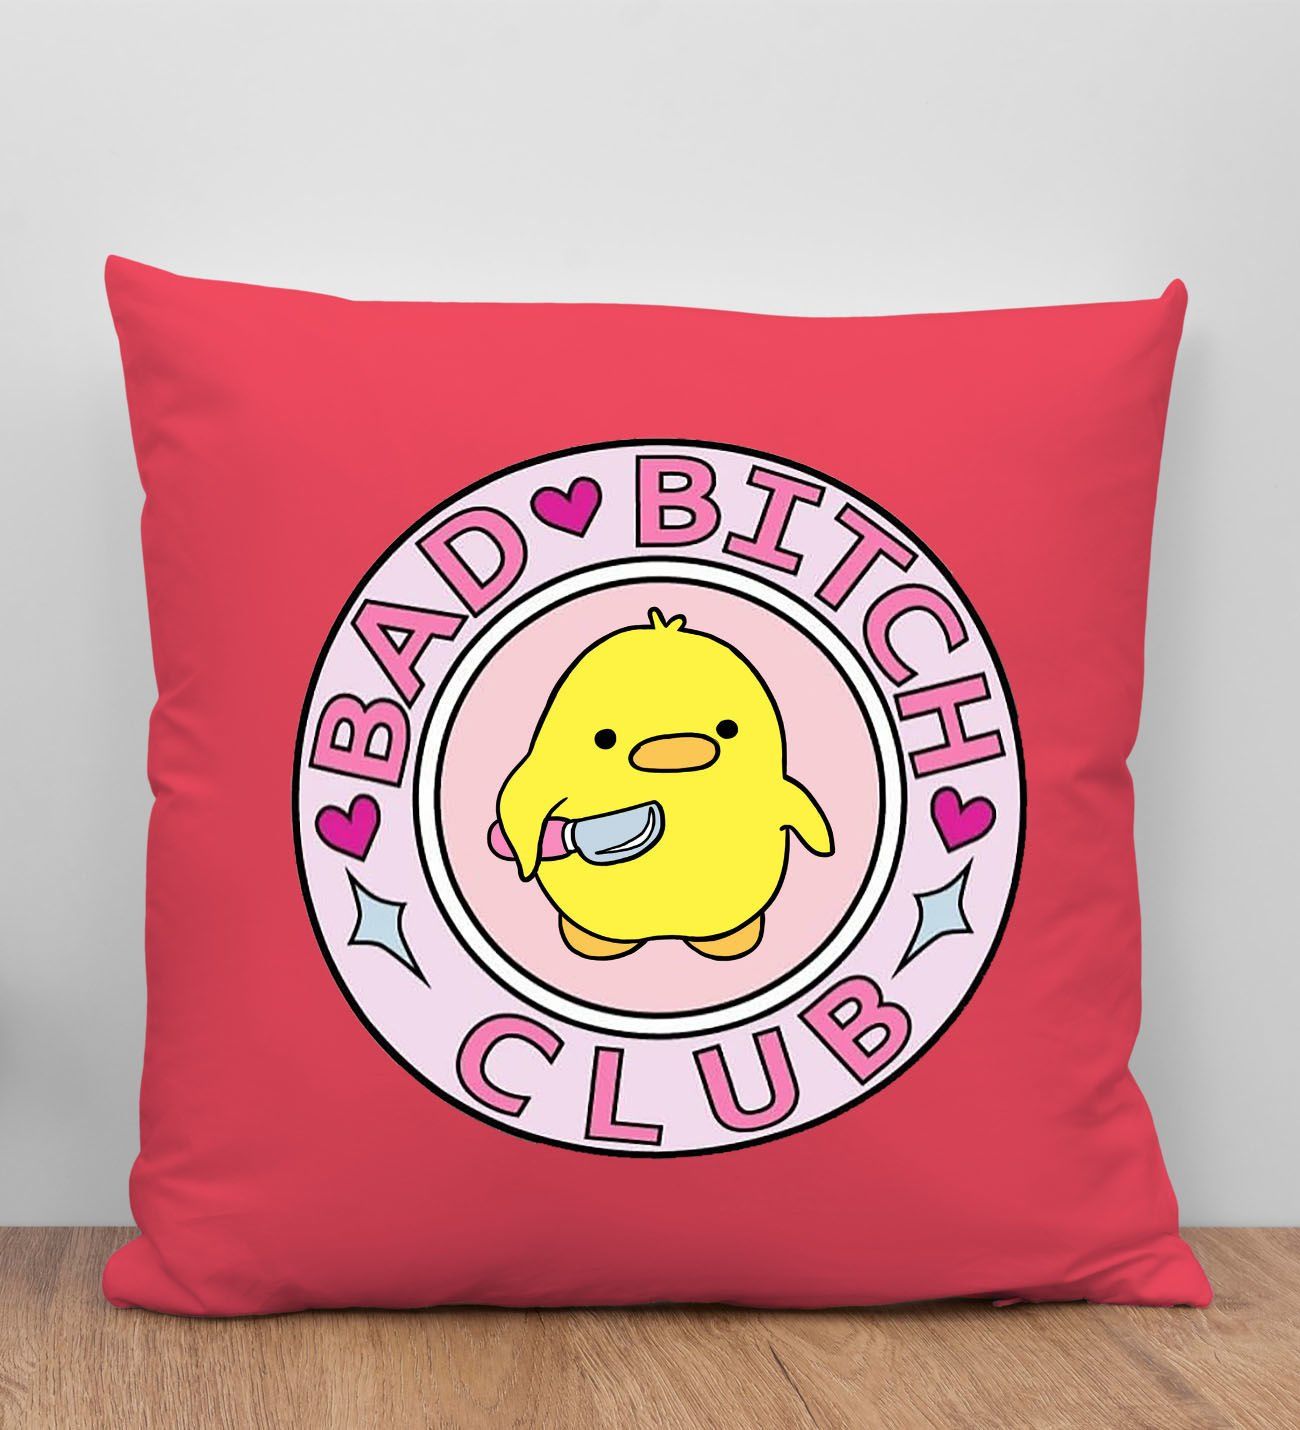 BK Gift Bad Bitch Club Tasarımlı Kırmızı Kırlent Yastık, Arkadaşa Hediye, Ev Dekorasyonu, Ev Hediyesi-1